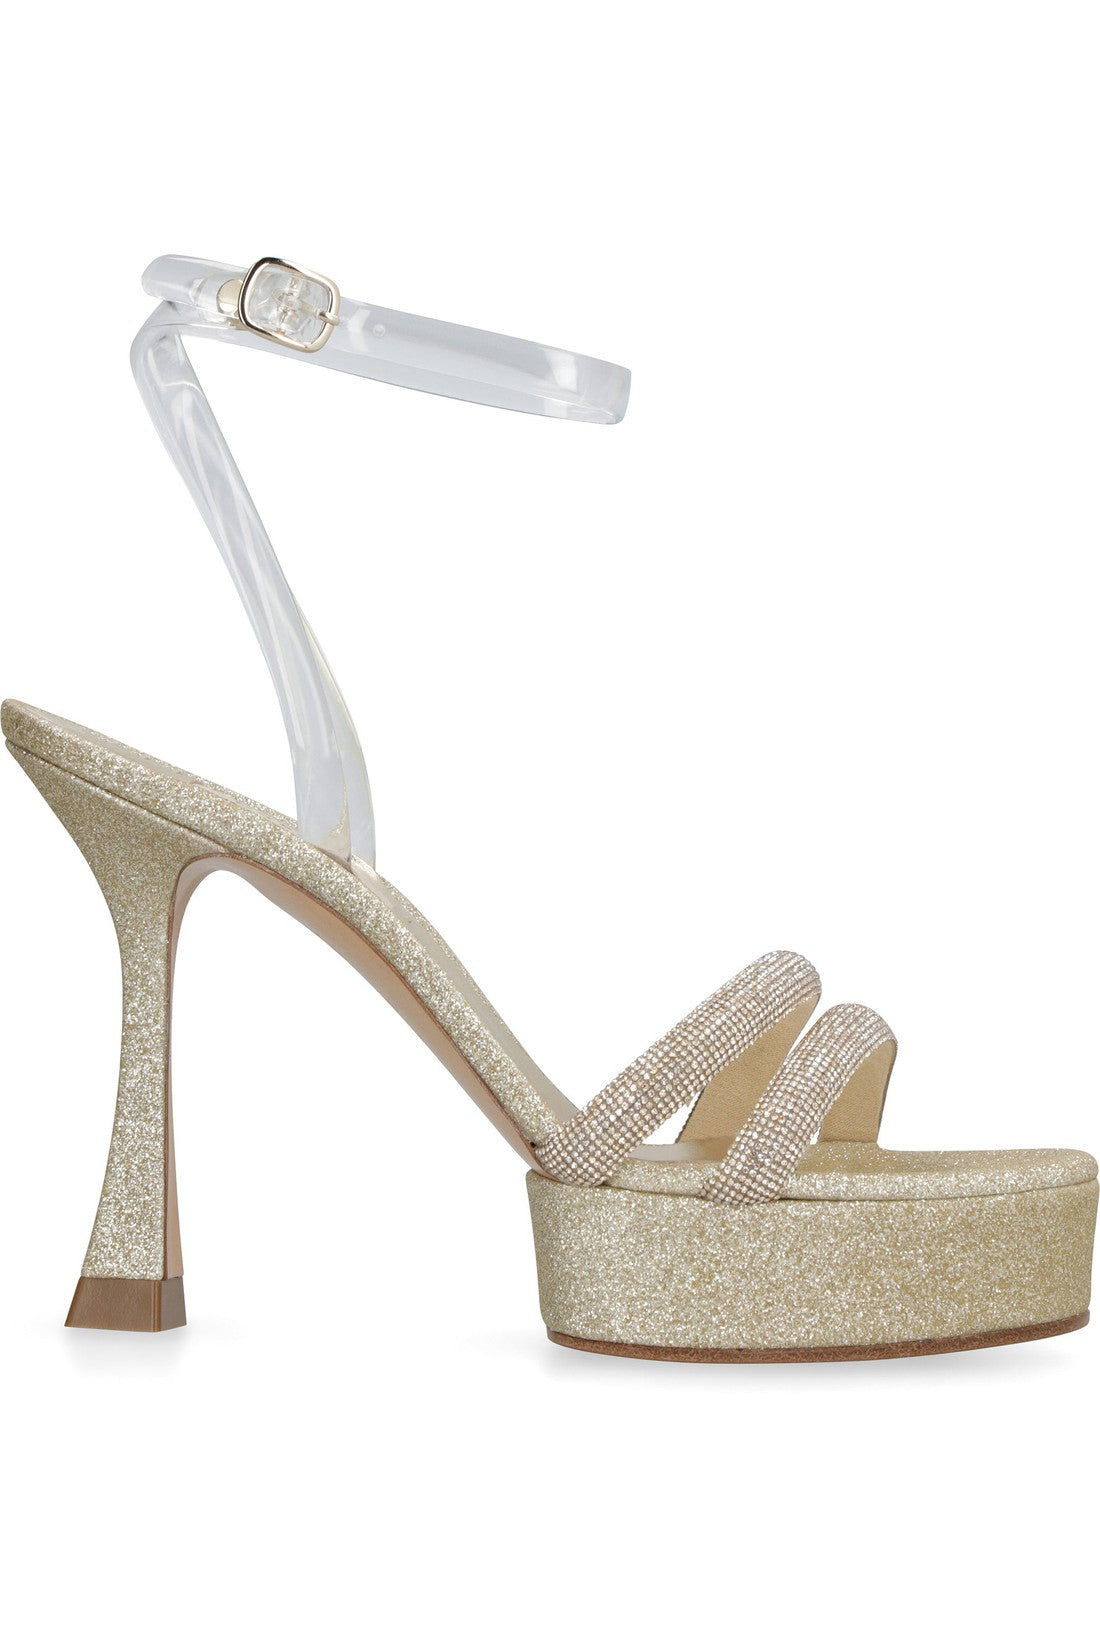 Casadei-OUTLET-SALE-Donna Hollywood platform sandals-ARCHIVIST